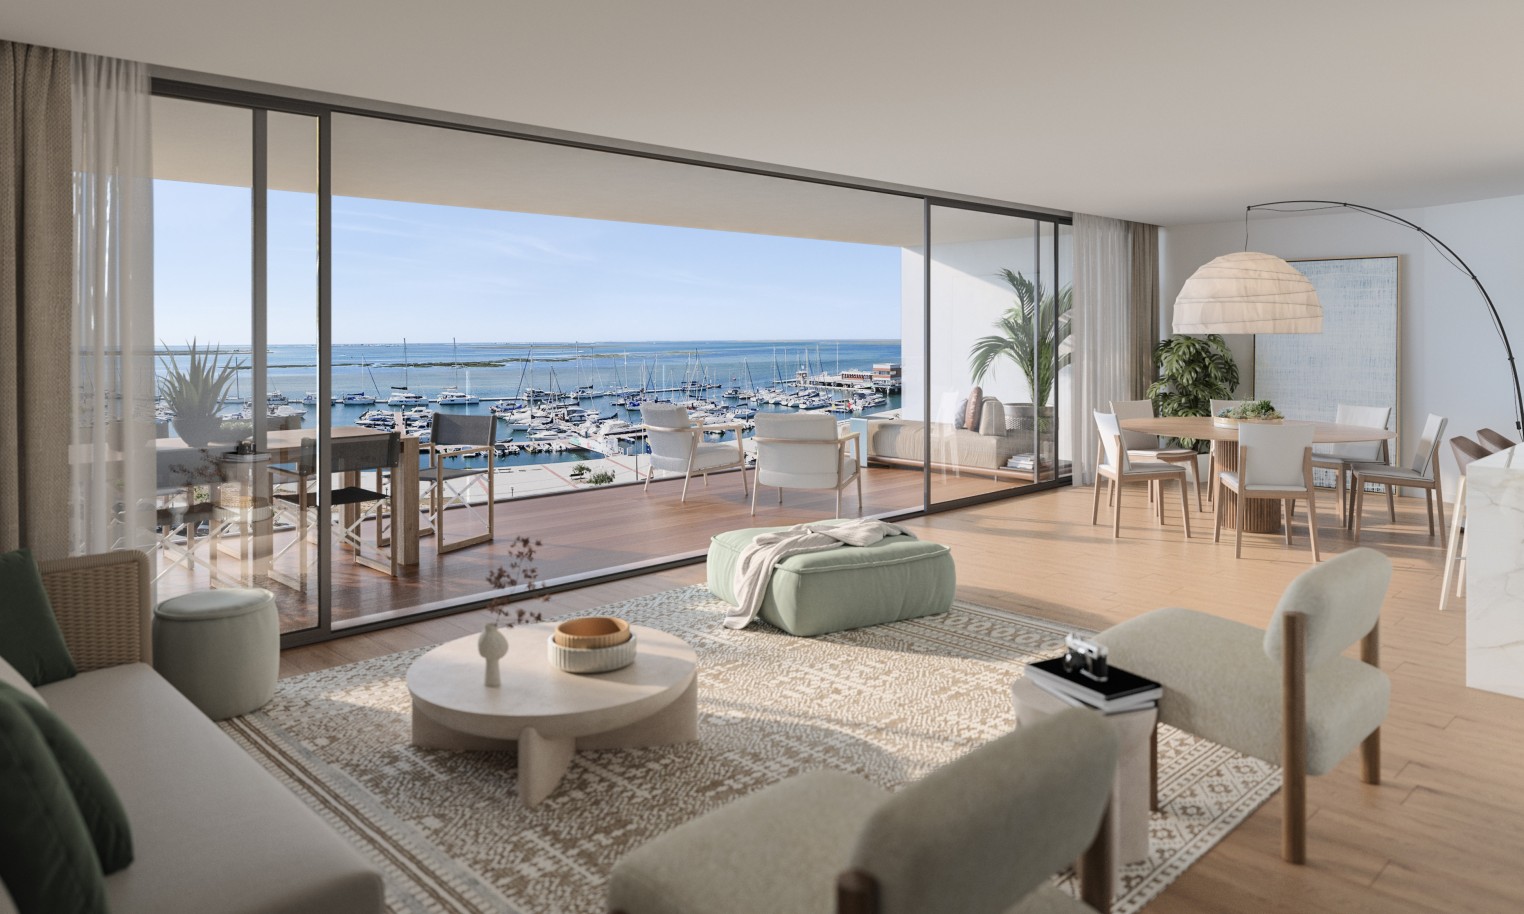 Pisos nuevos con vistas al mar, 1, 2 y 3 dormitorios, en venta en Olhão, Algarve_244257